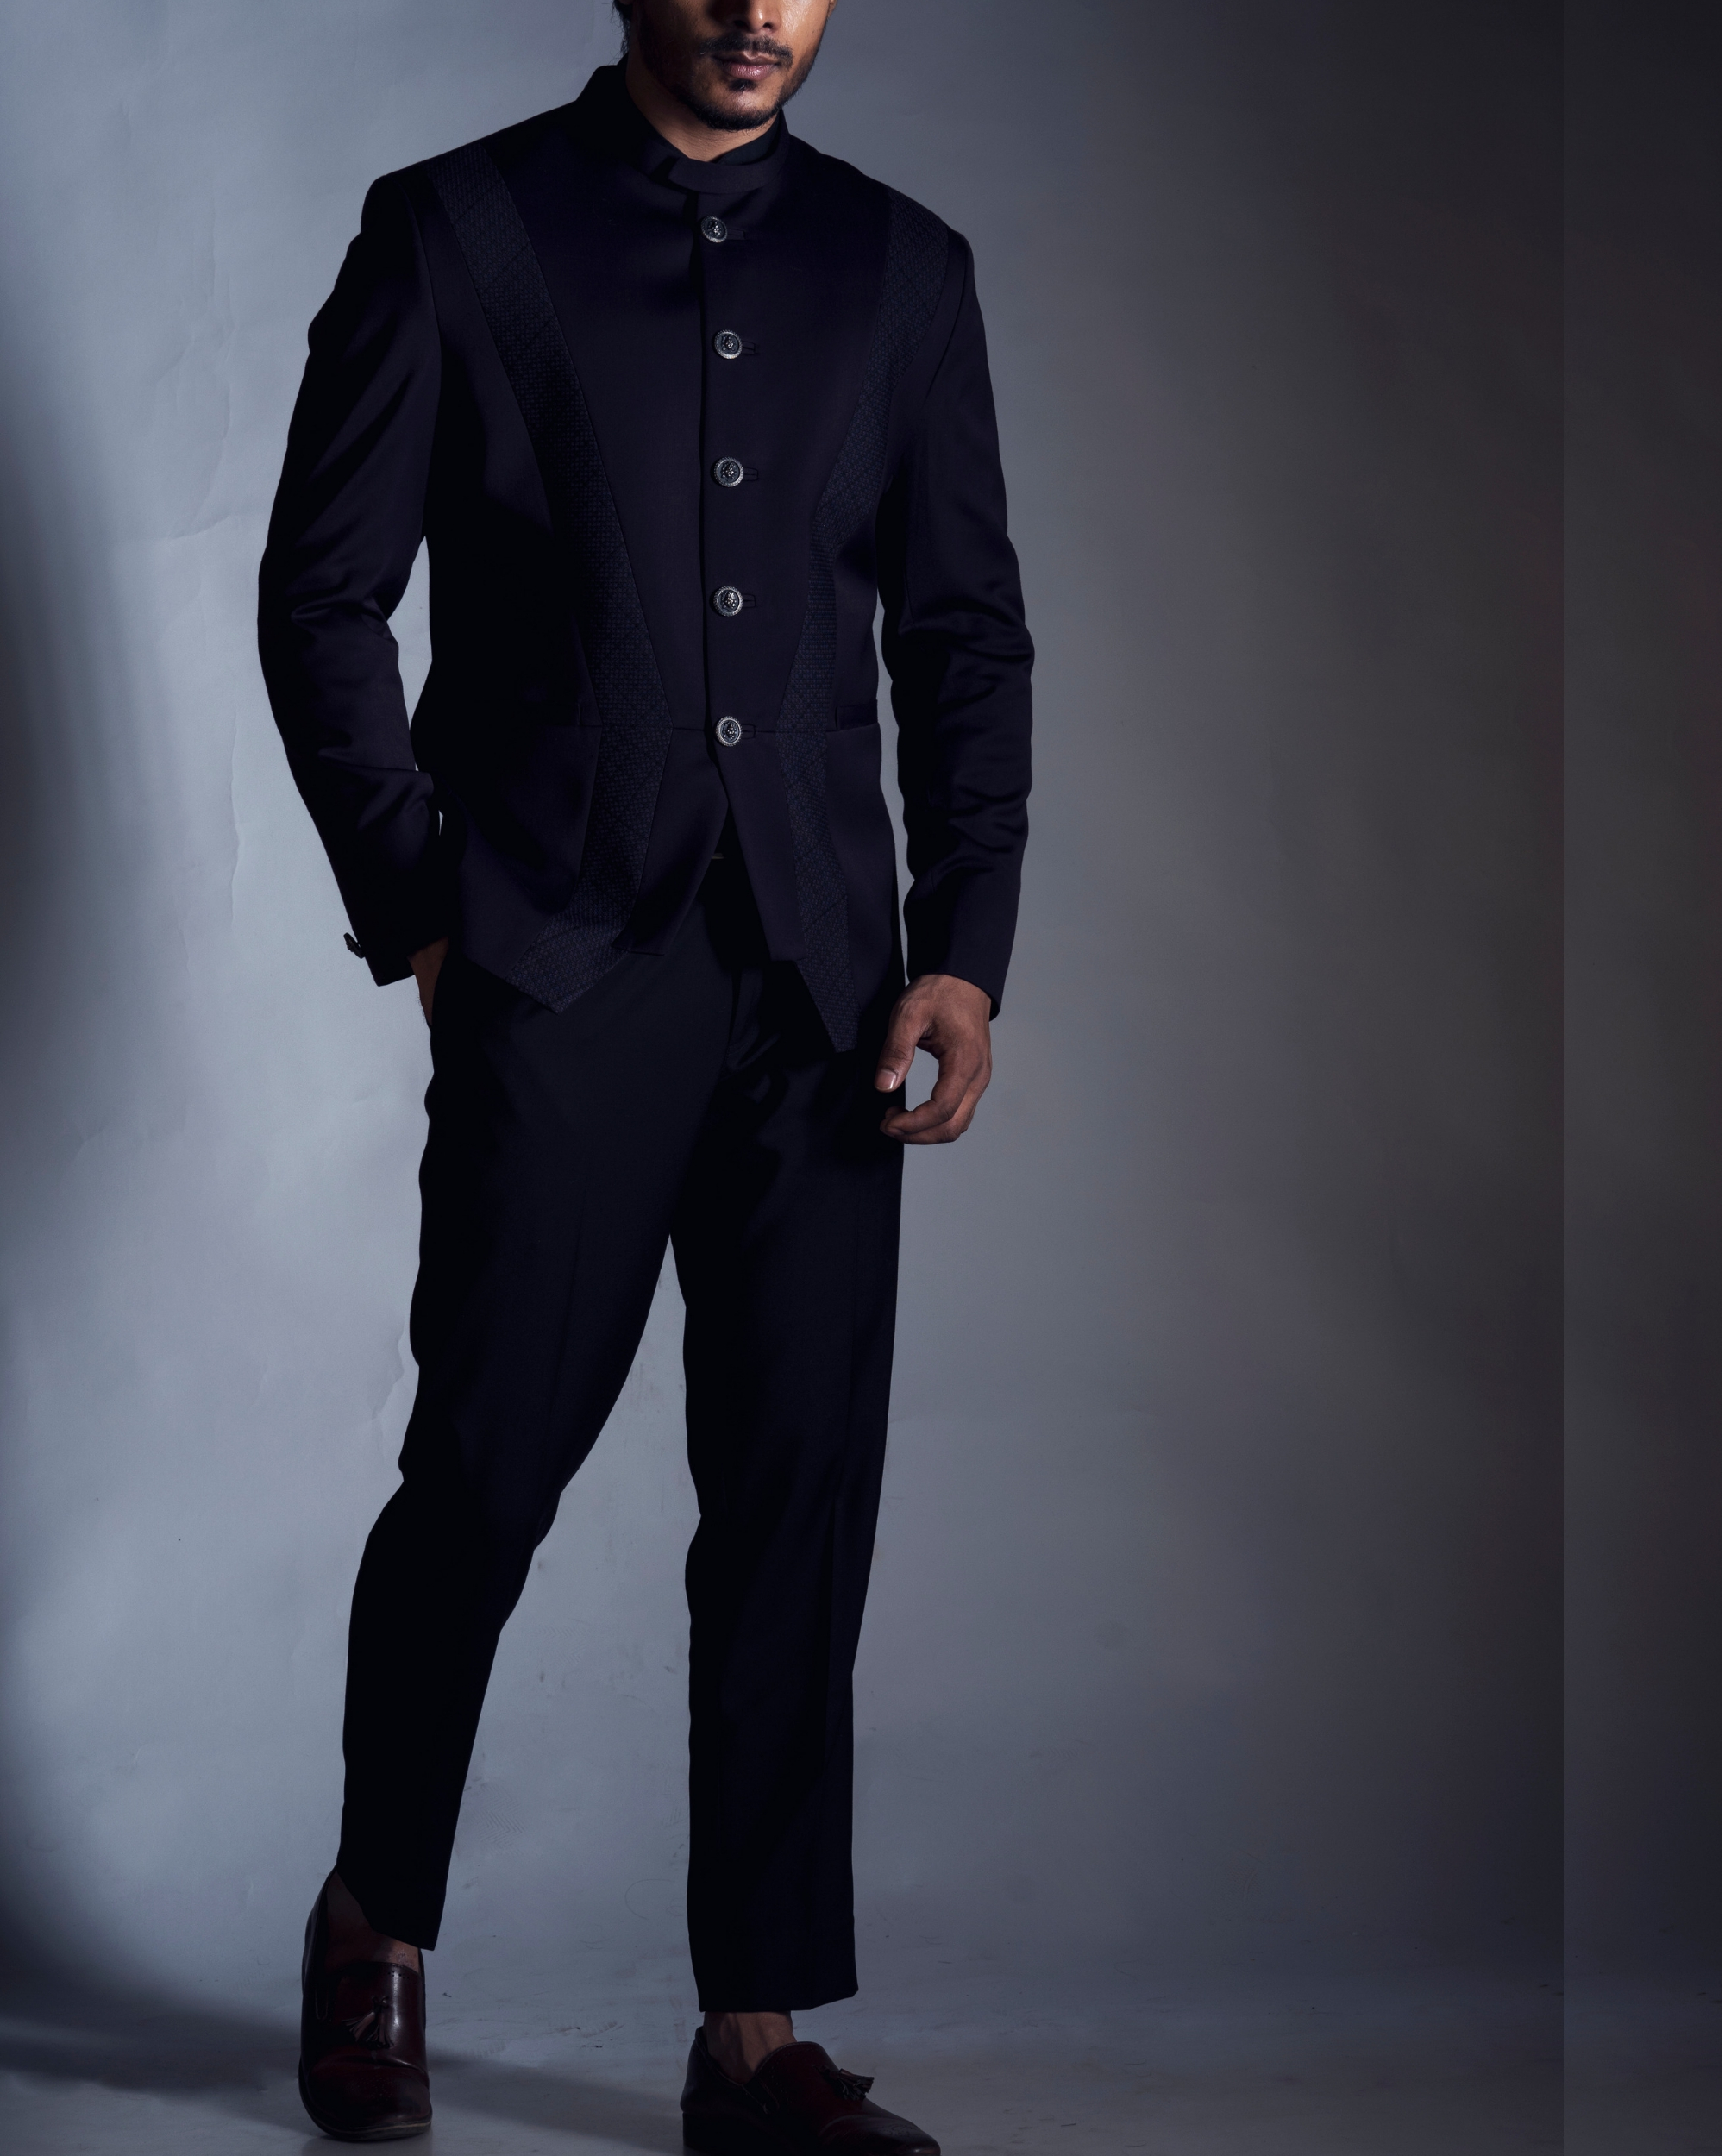 Men's Suit Business Formal Wedding Coat Pants Waistcoat 3-Piece Leisure  Blazer | eBay